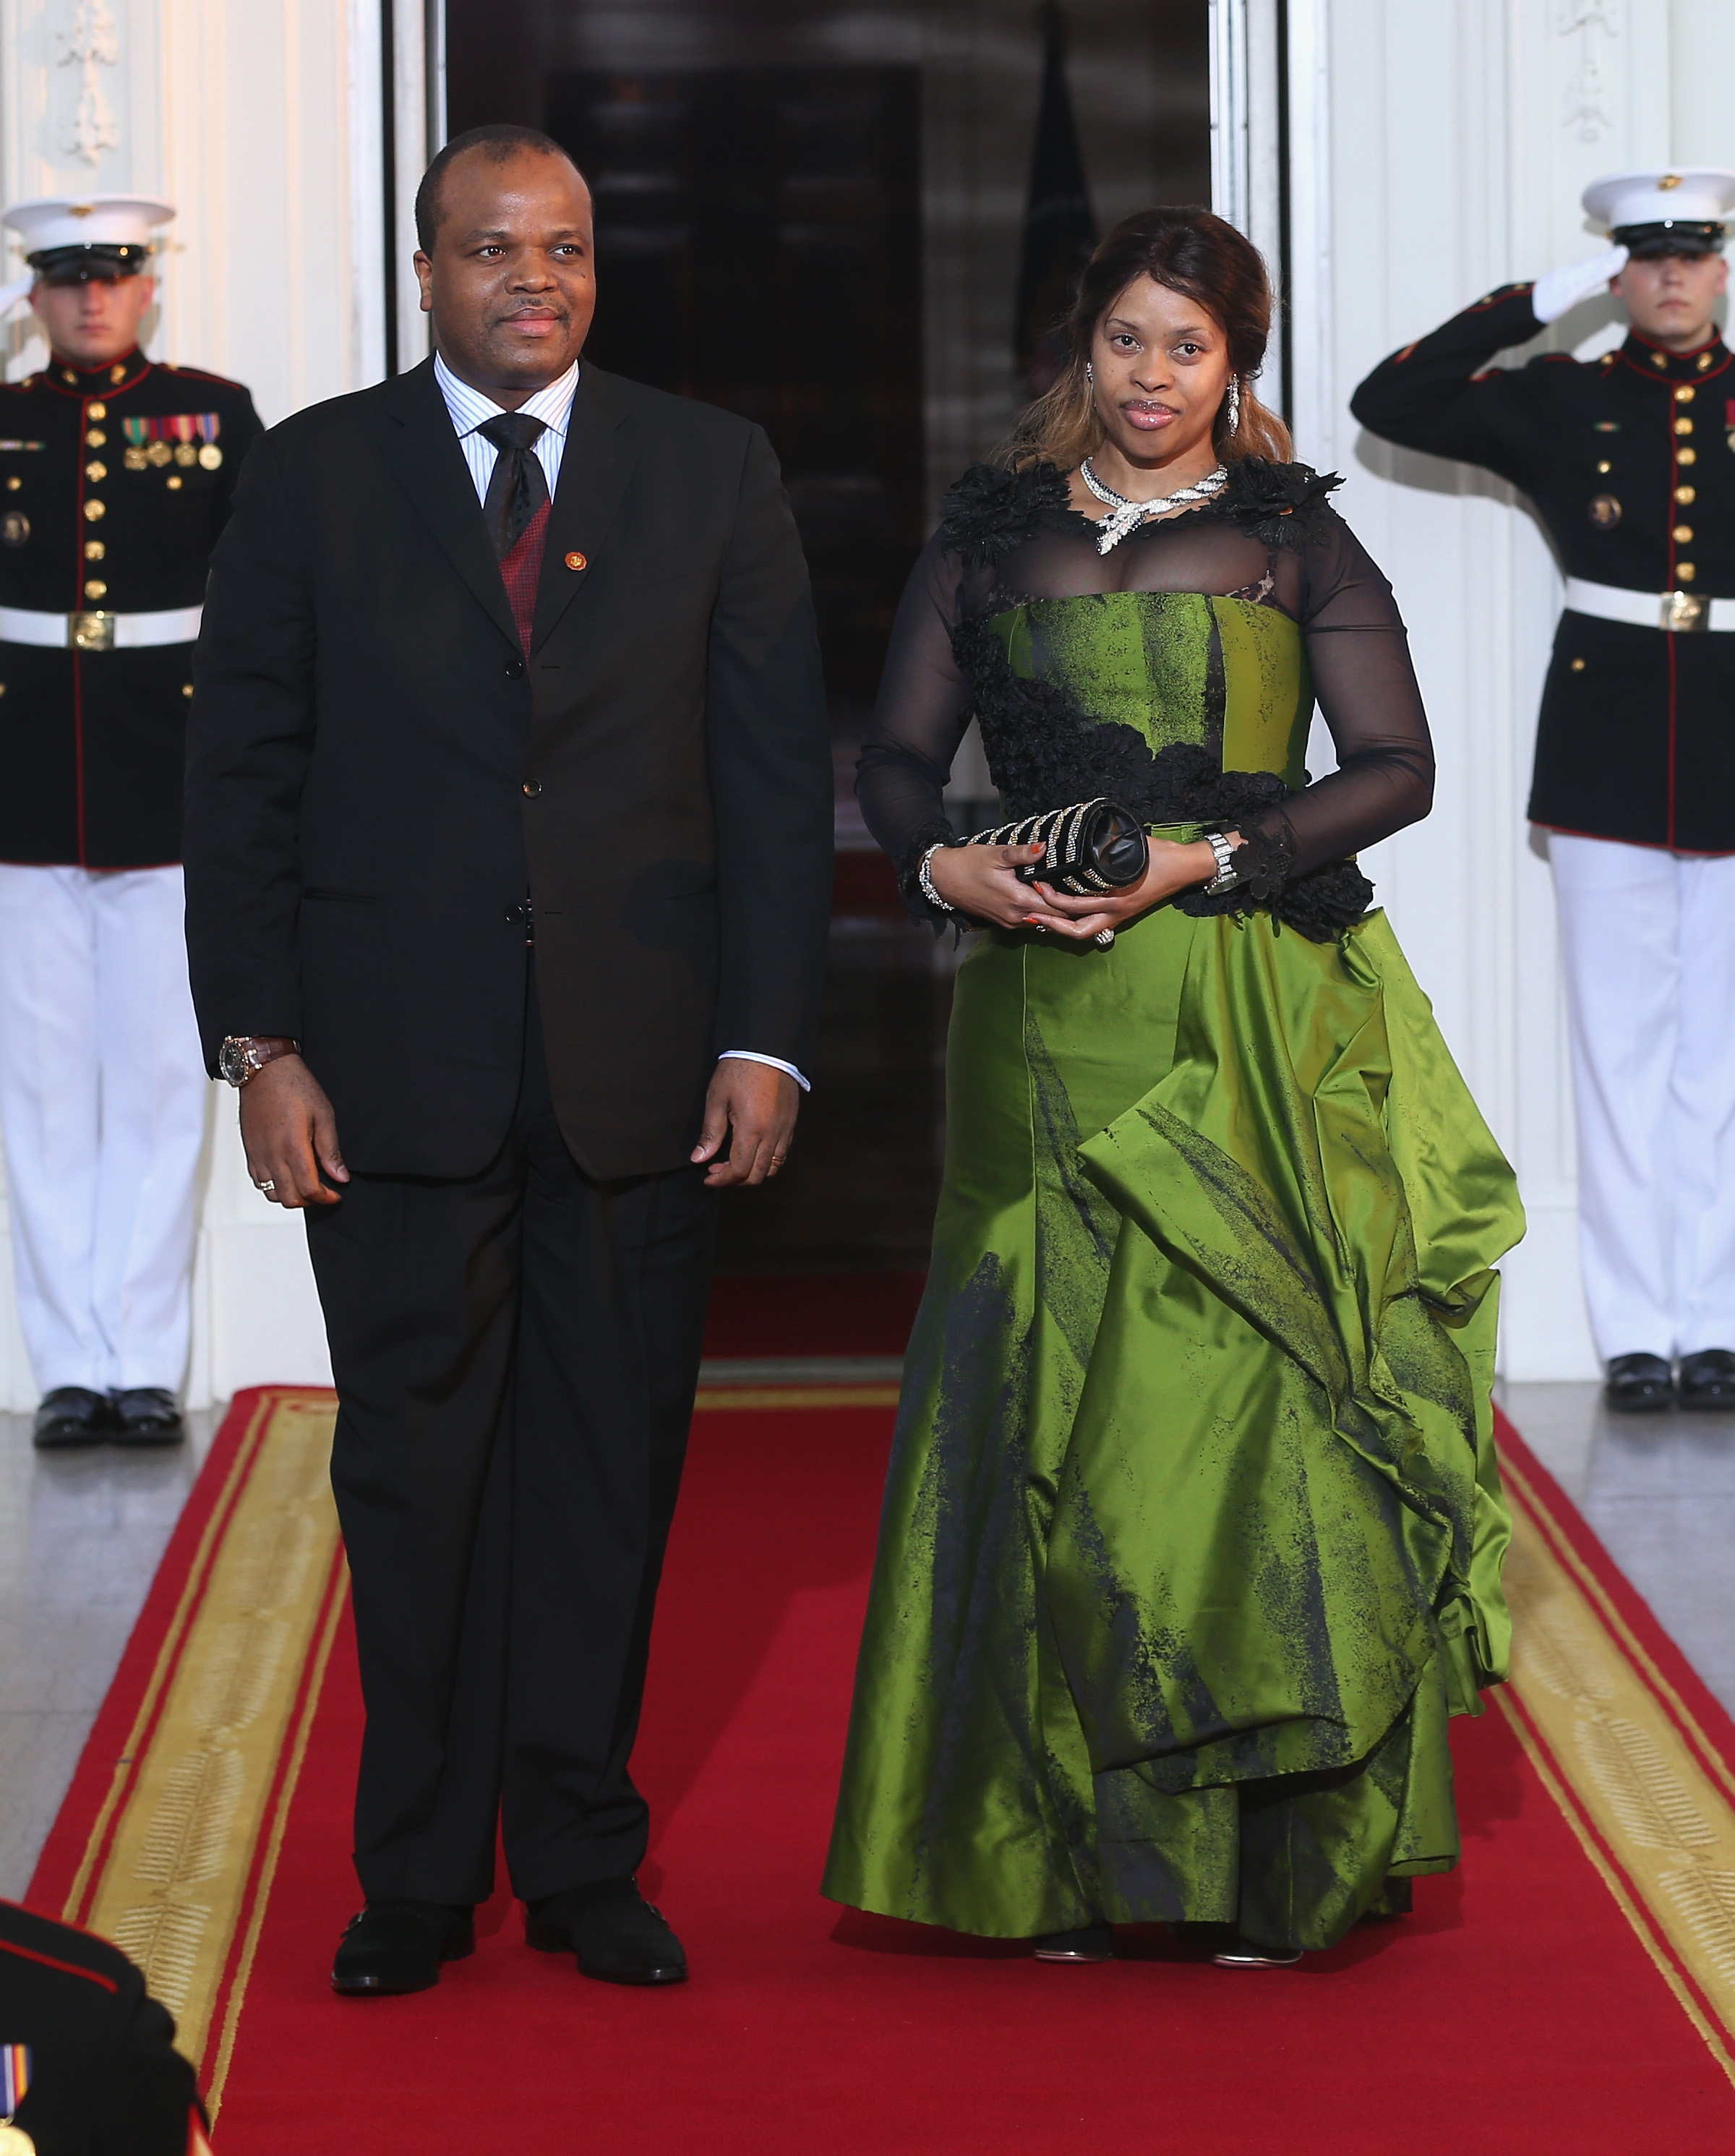 Крал Мсвати III - Свазиленд е държава в Южна Африка. На снимката е заедно с една от съпругите си